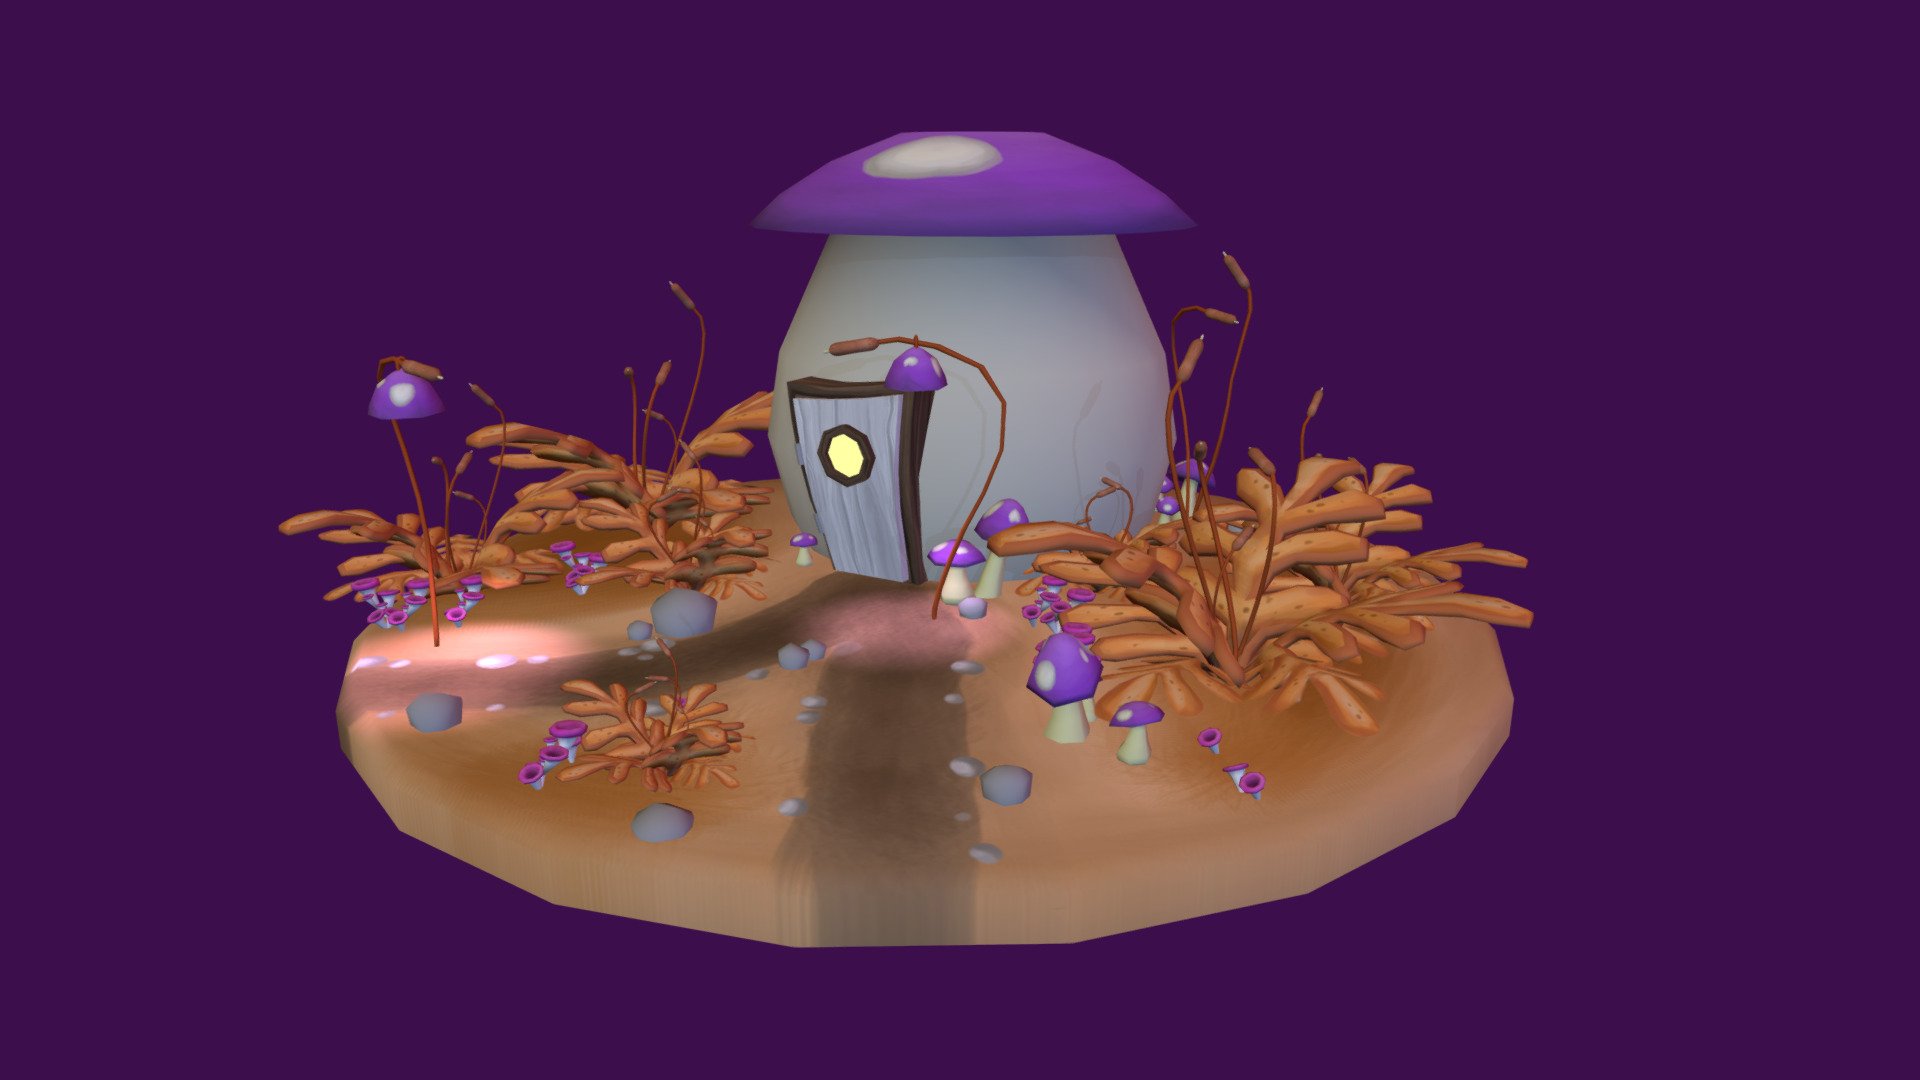 Mushroom house - 3D model by lottakar 3d model